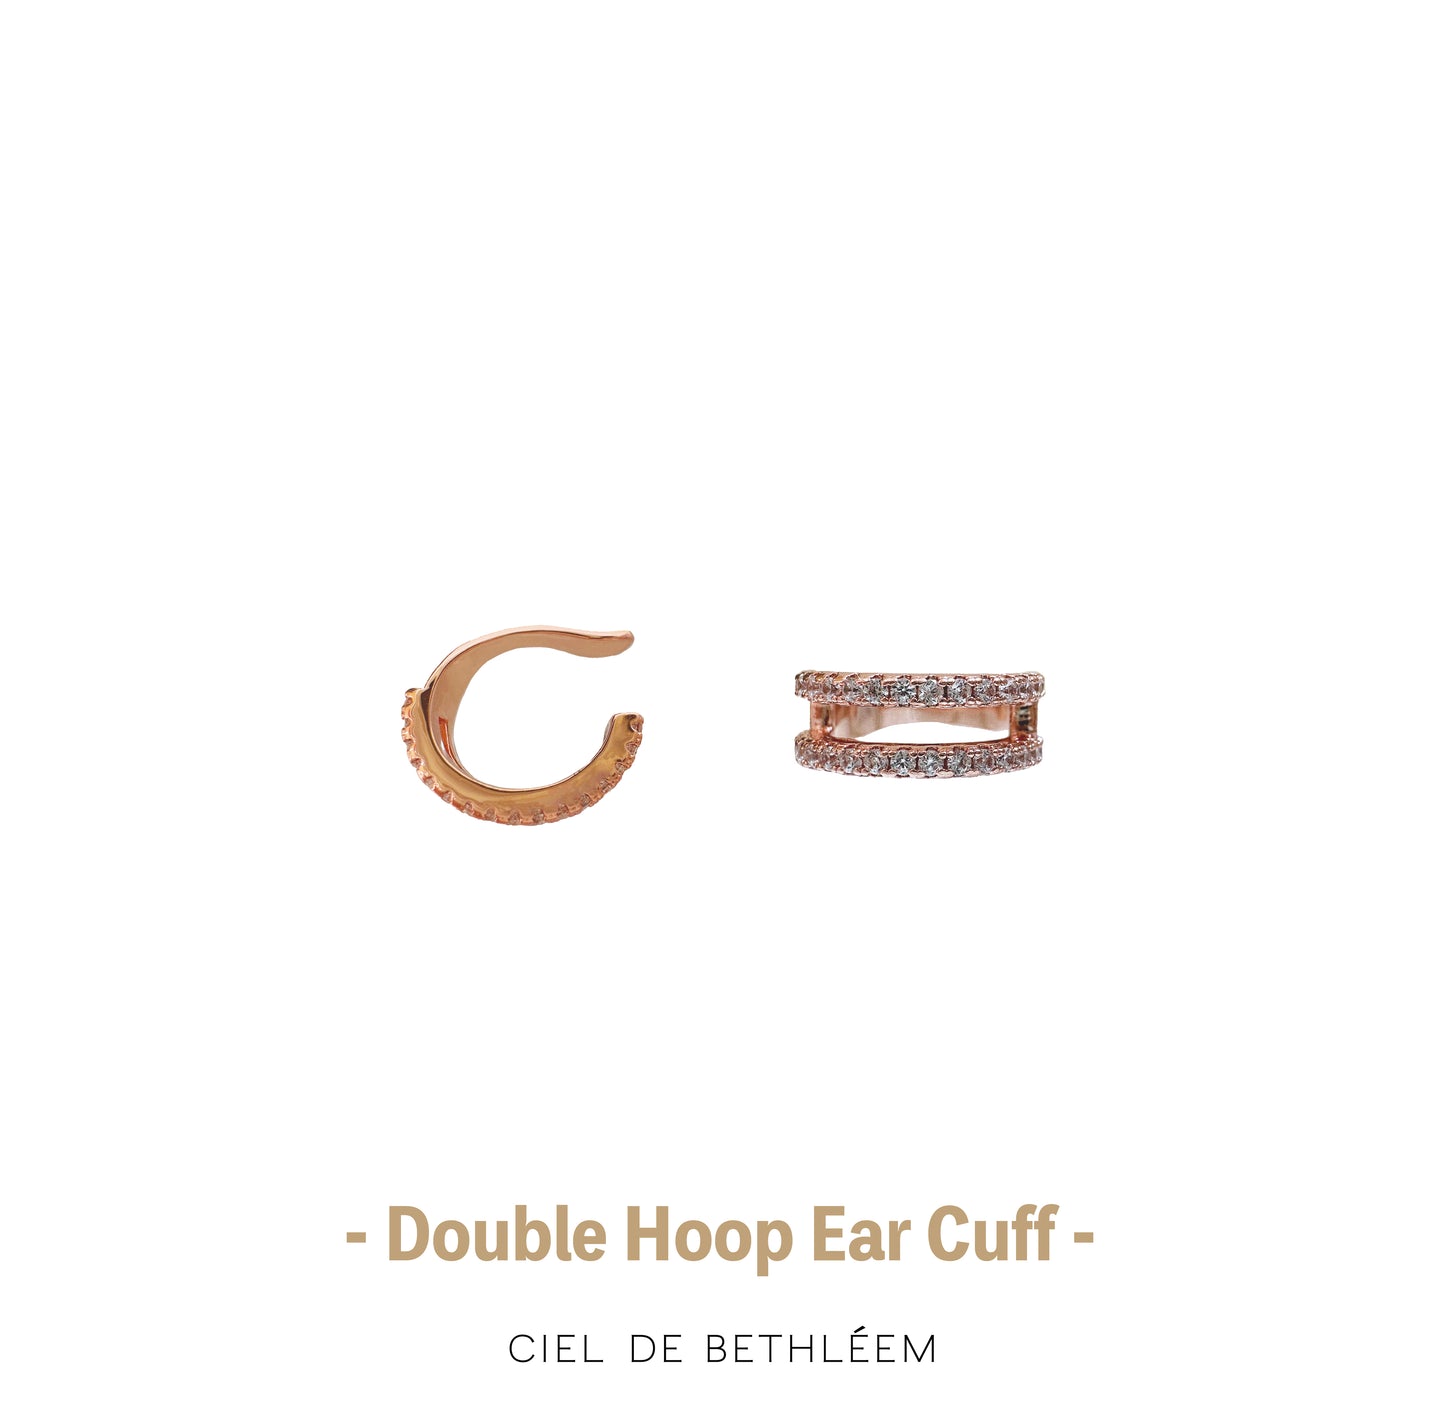 Double Hoop Ear Cuff